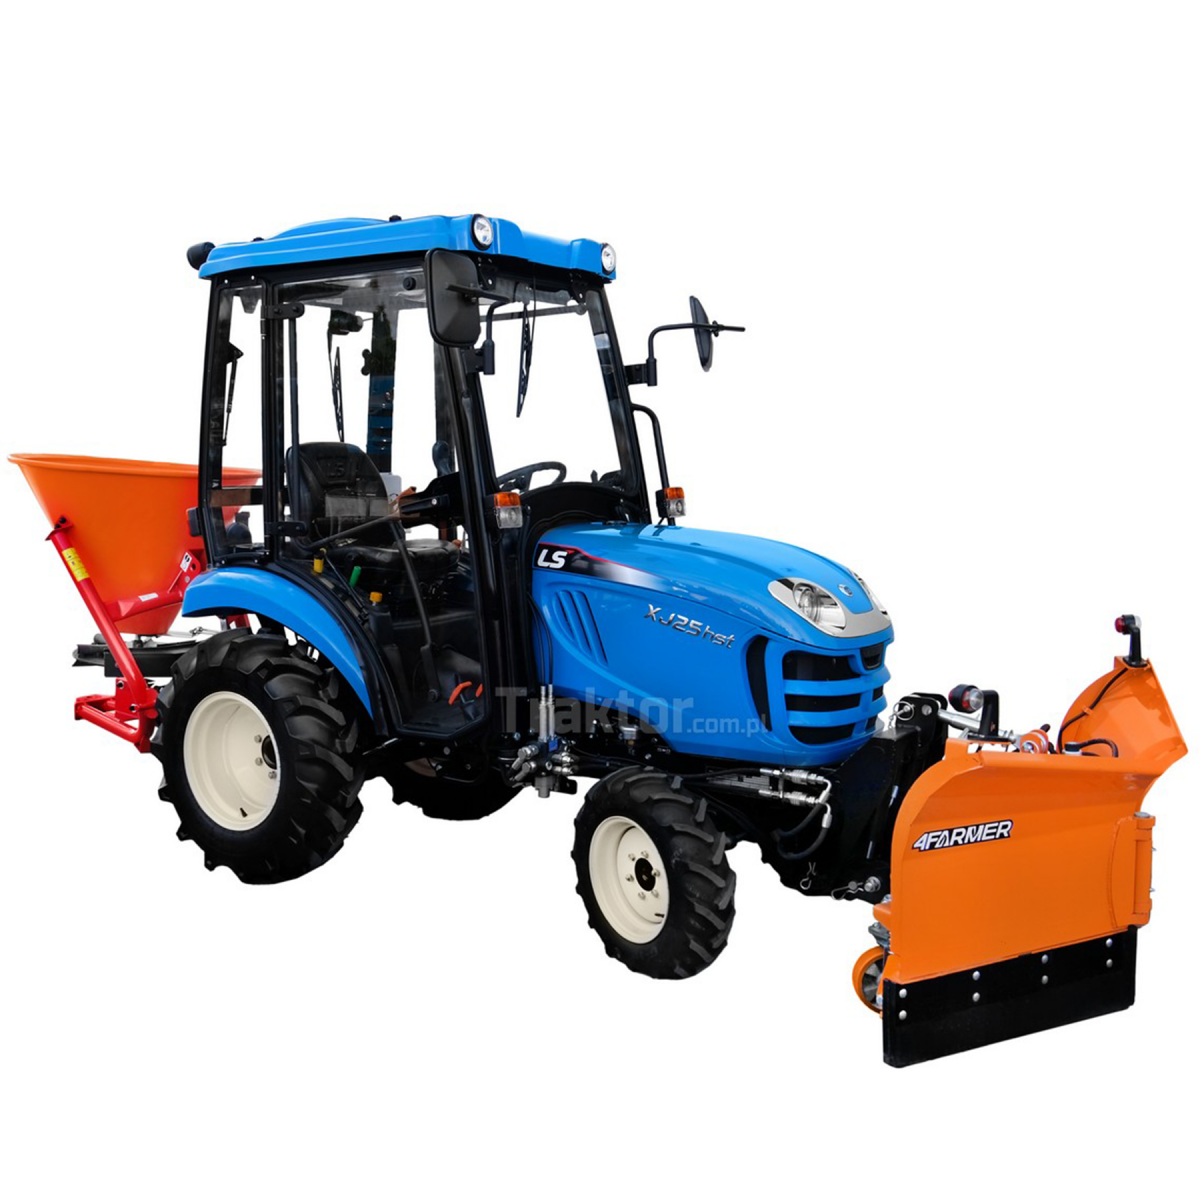 LS Traktor XJ25 HST 4x4 - 24,4 HP / CAB + Vario šípový sněhový pluh 150 cm, hydraulický 4FARMER + 200L sypač Dexwal